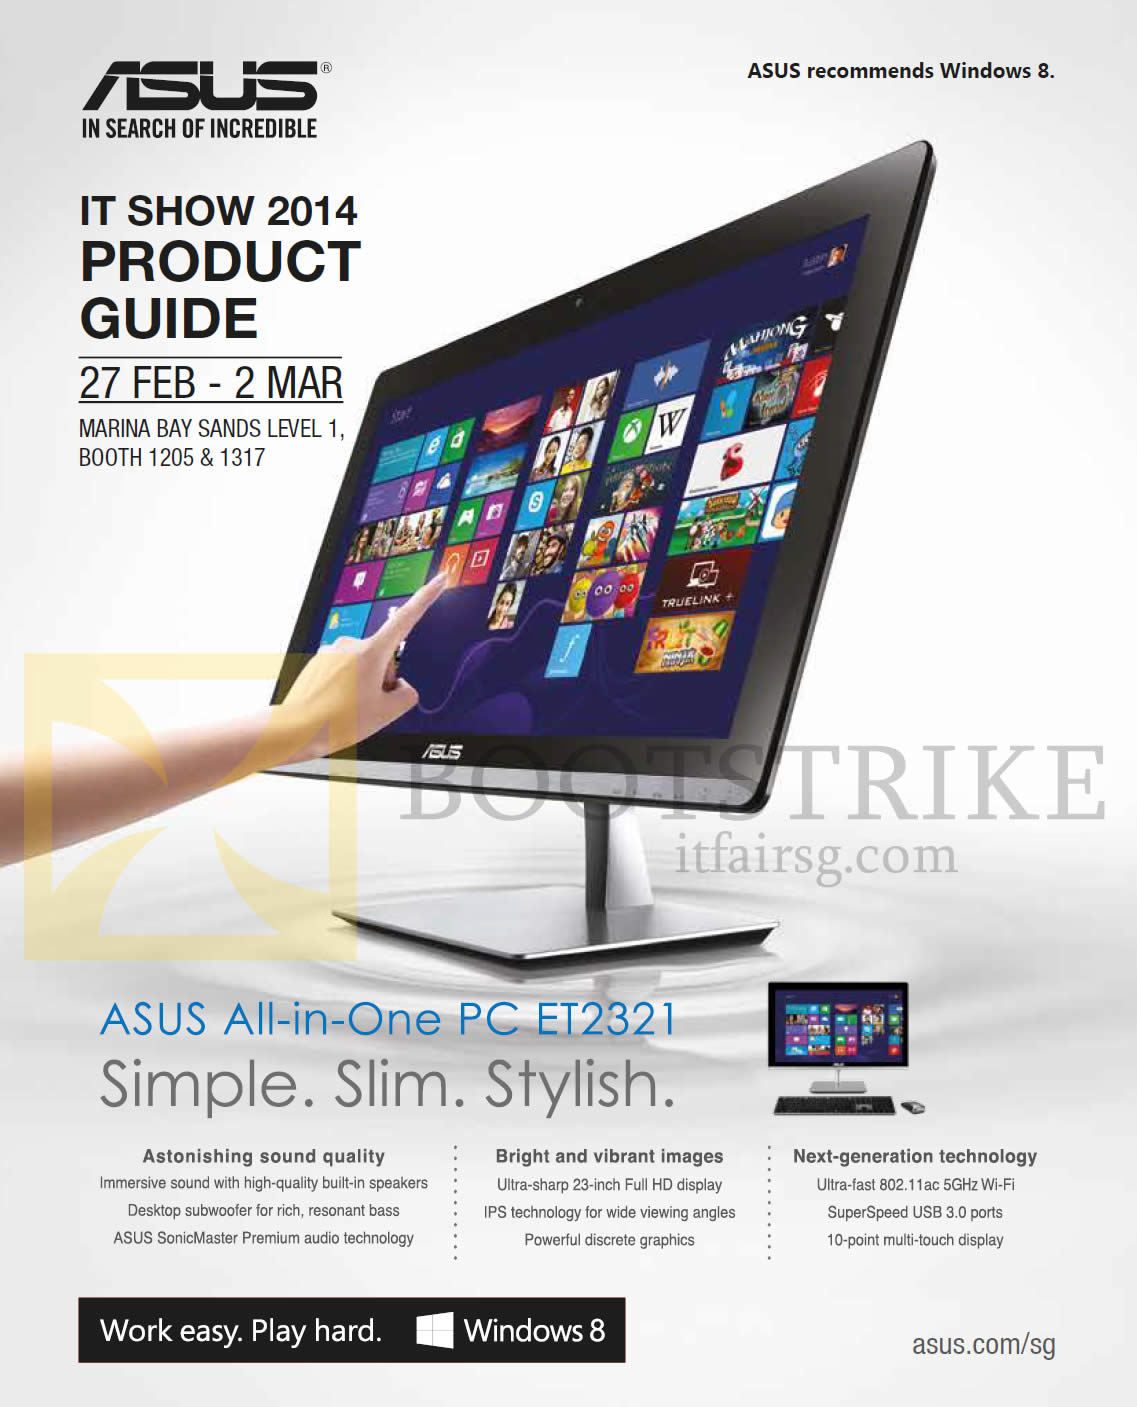 IT SHOW 2014 price list image brochure of ASUS AIO Desktop PC ET2321 Features